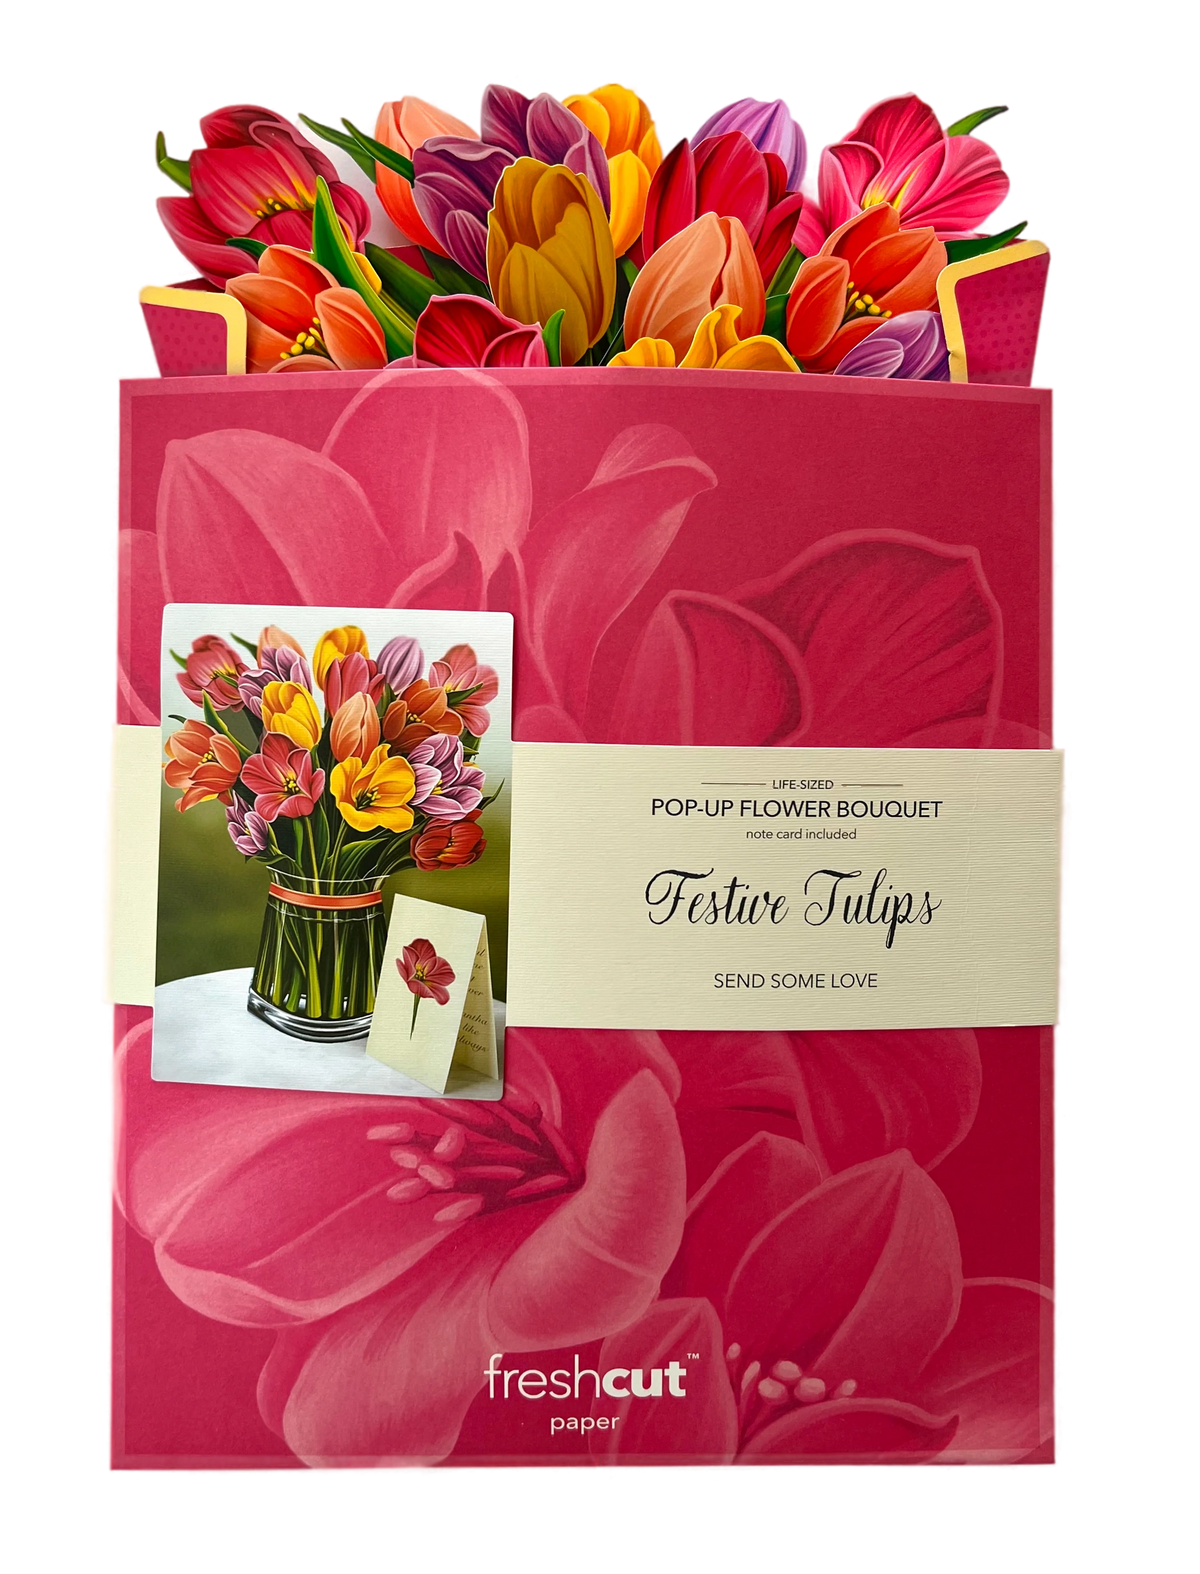 Festive Tulips FreshCut Paper Bouquet